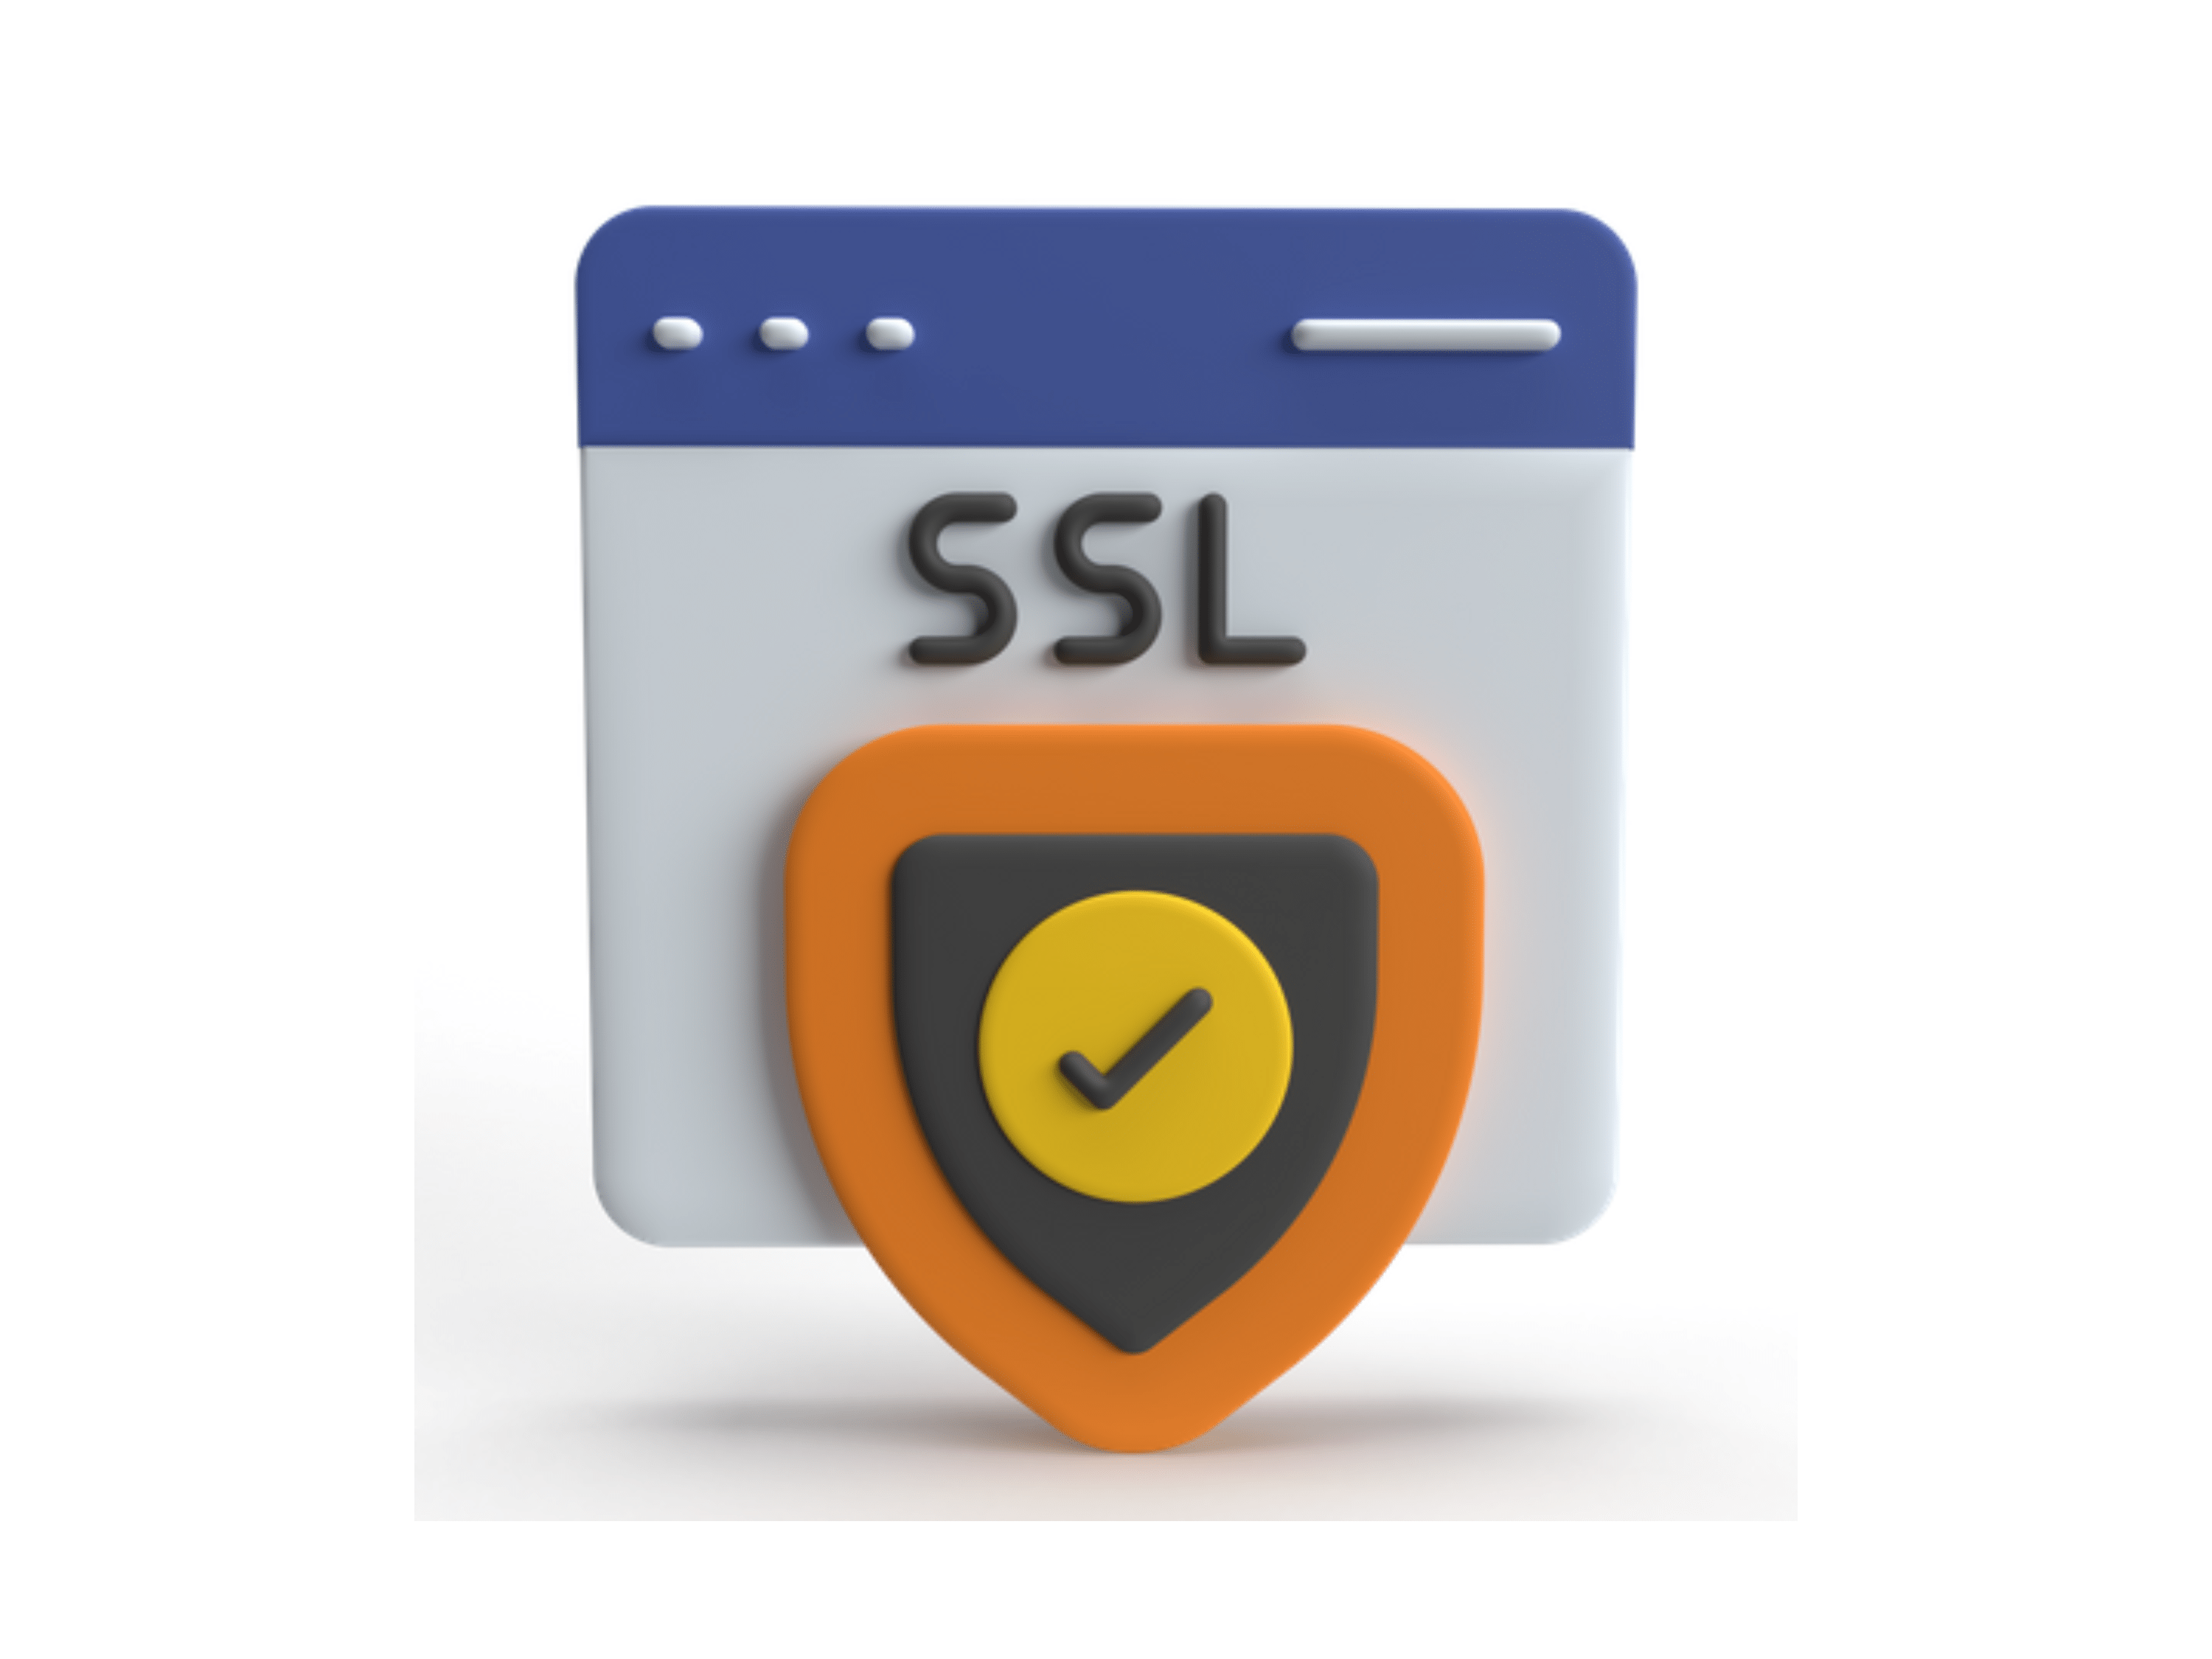 ¿Cómo instalar SSL en Cloudflare?